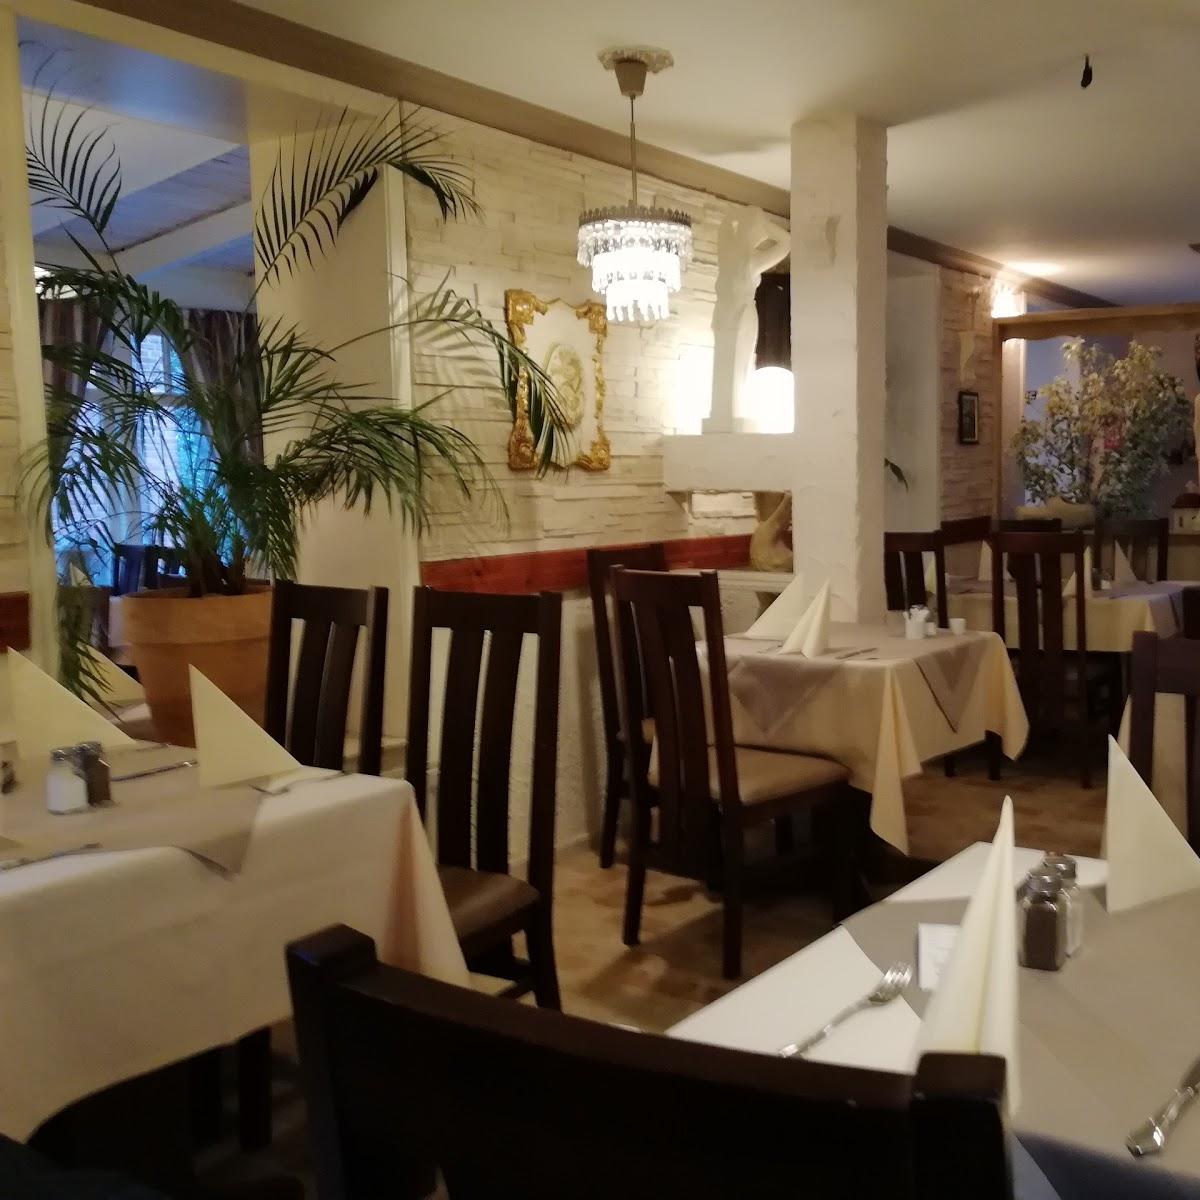 Restaurant "Restaurant Athen" in  Burgdorf